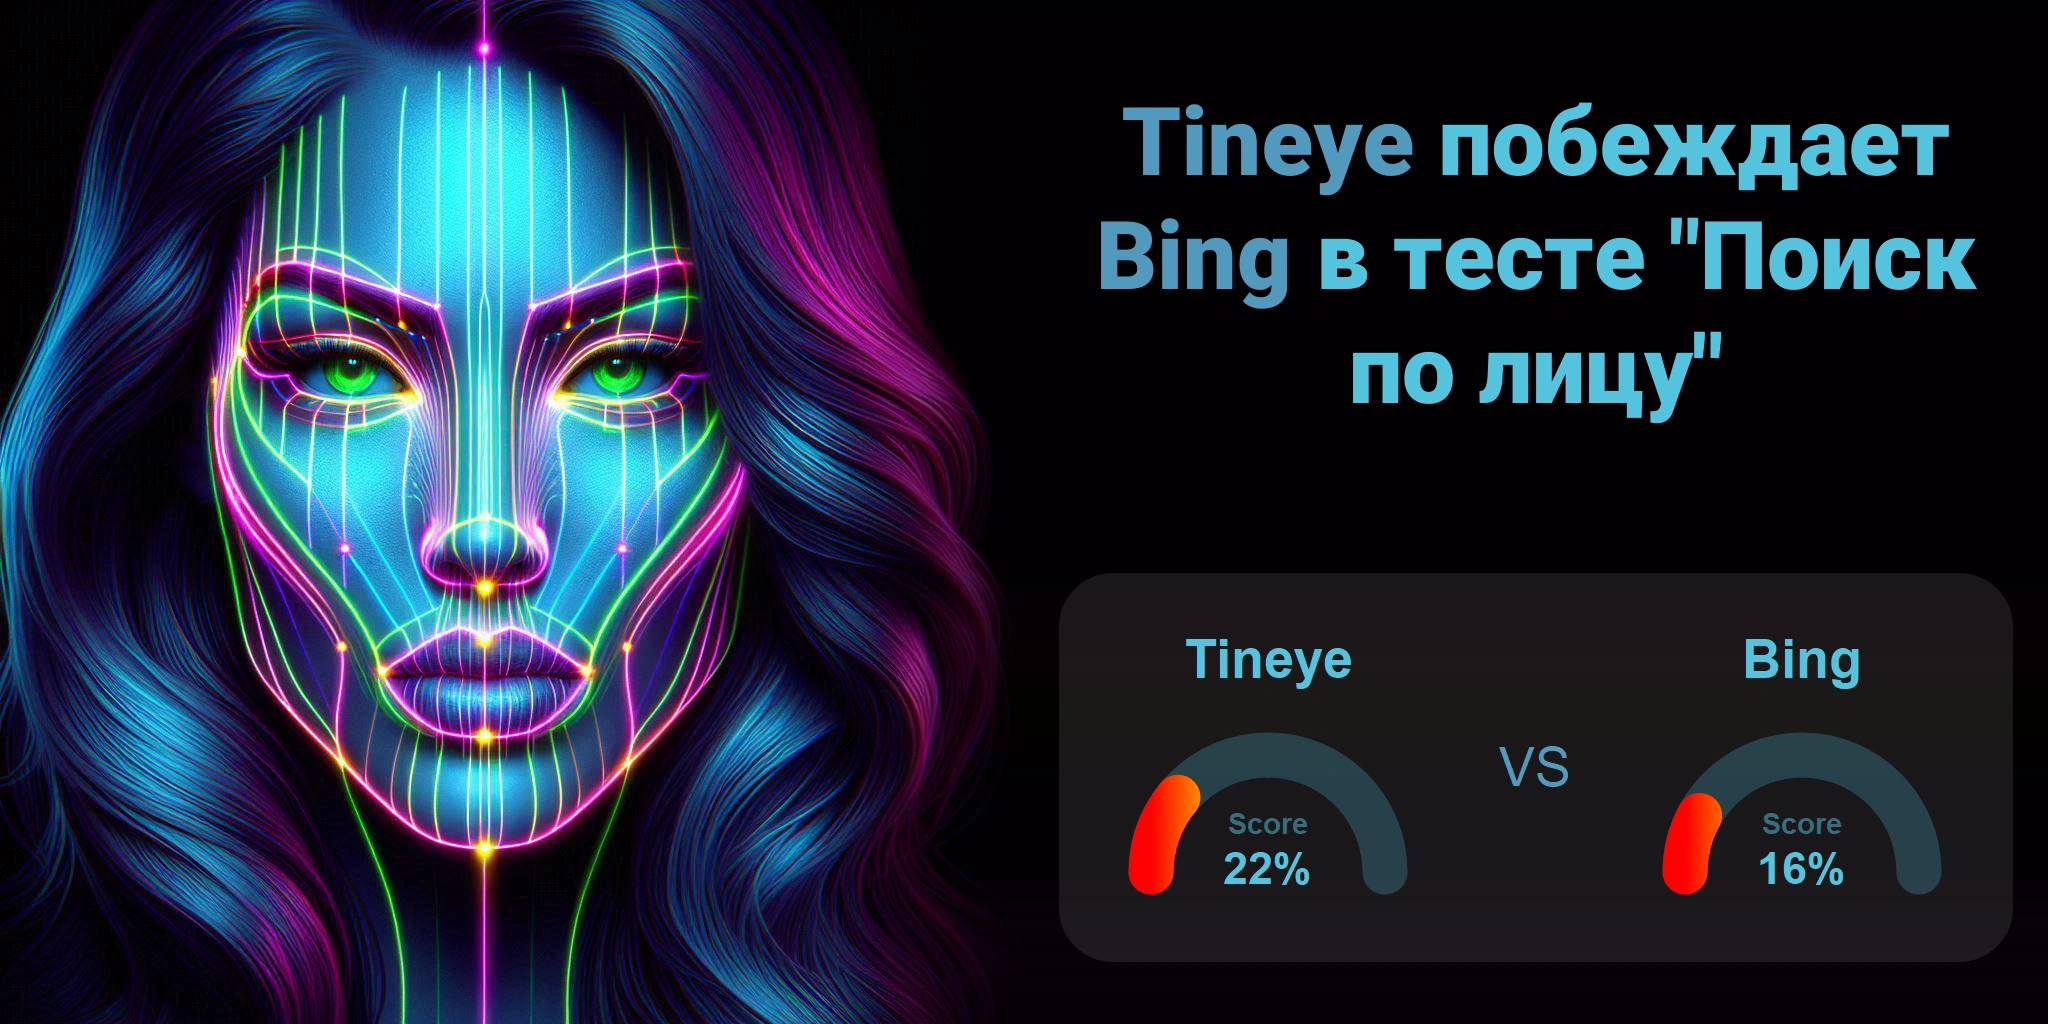 Что лучше для поиска по лицам: <br>Tineye или Bing?